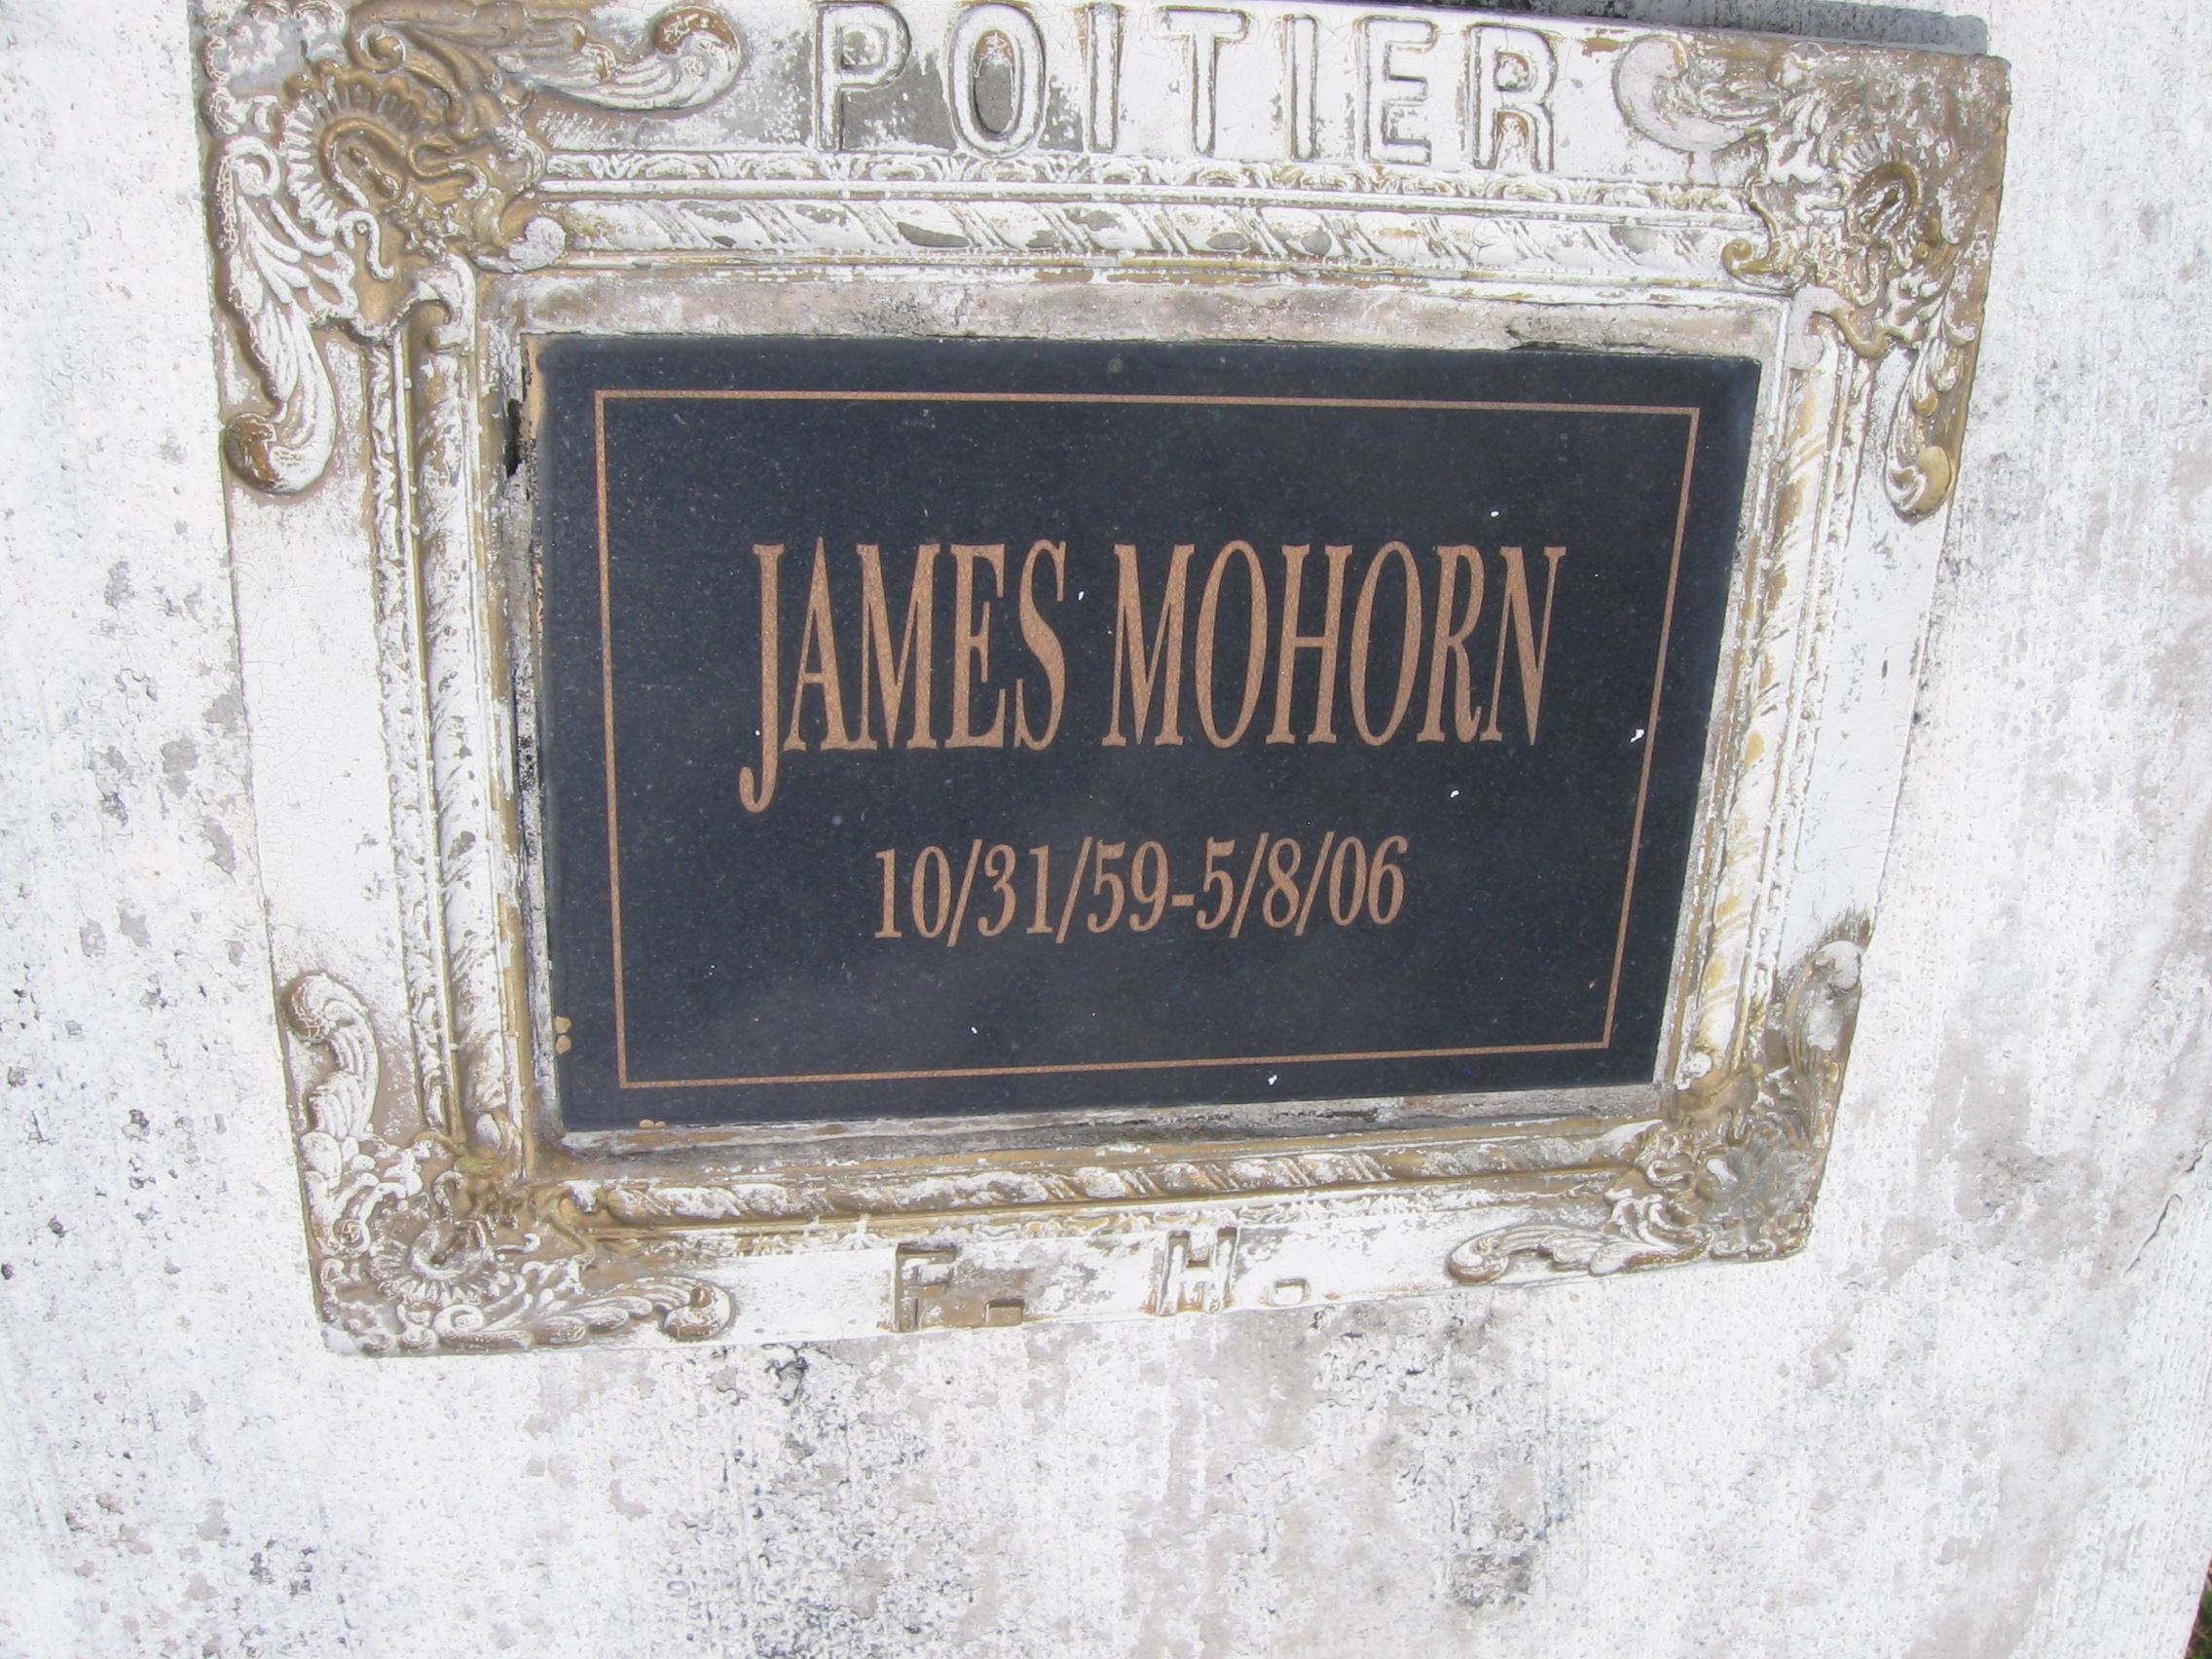 James Mohorn